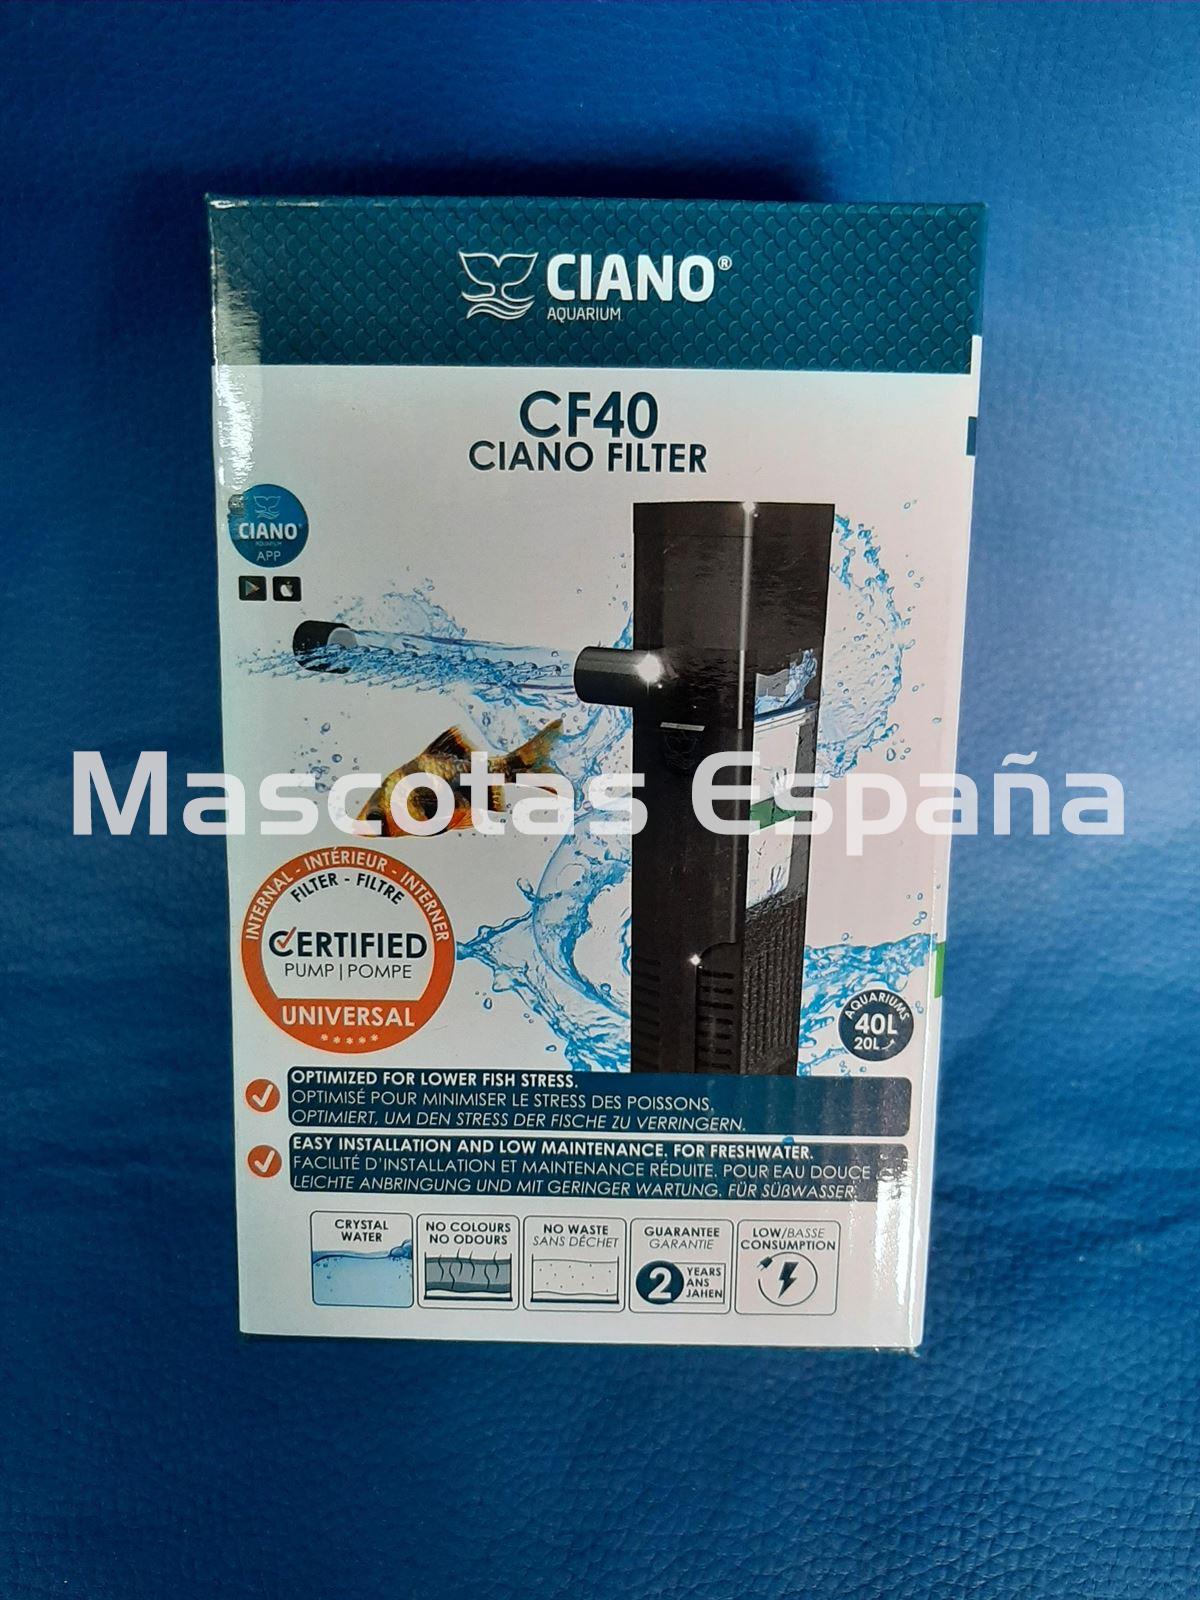 CIANO Filtro Interior Acuario CF40 - Imagen 1